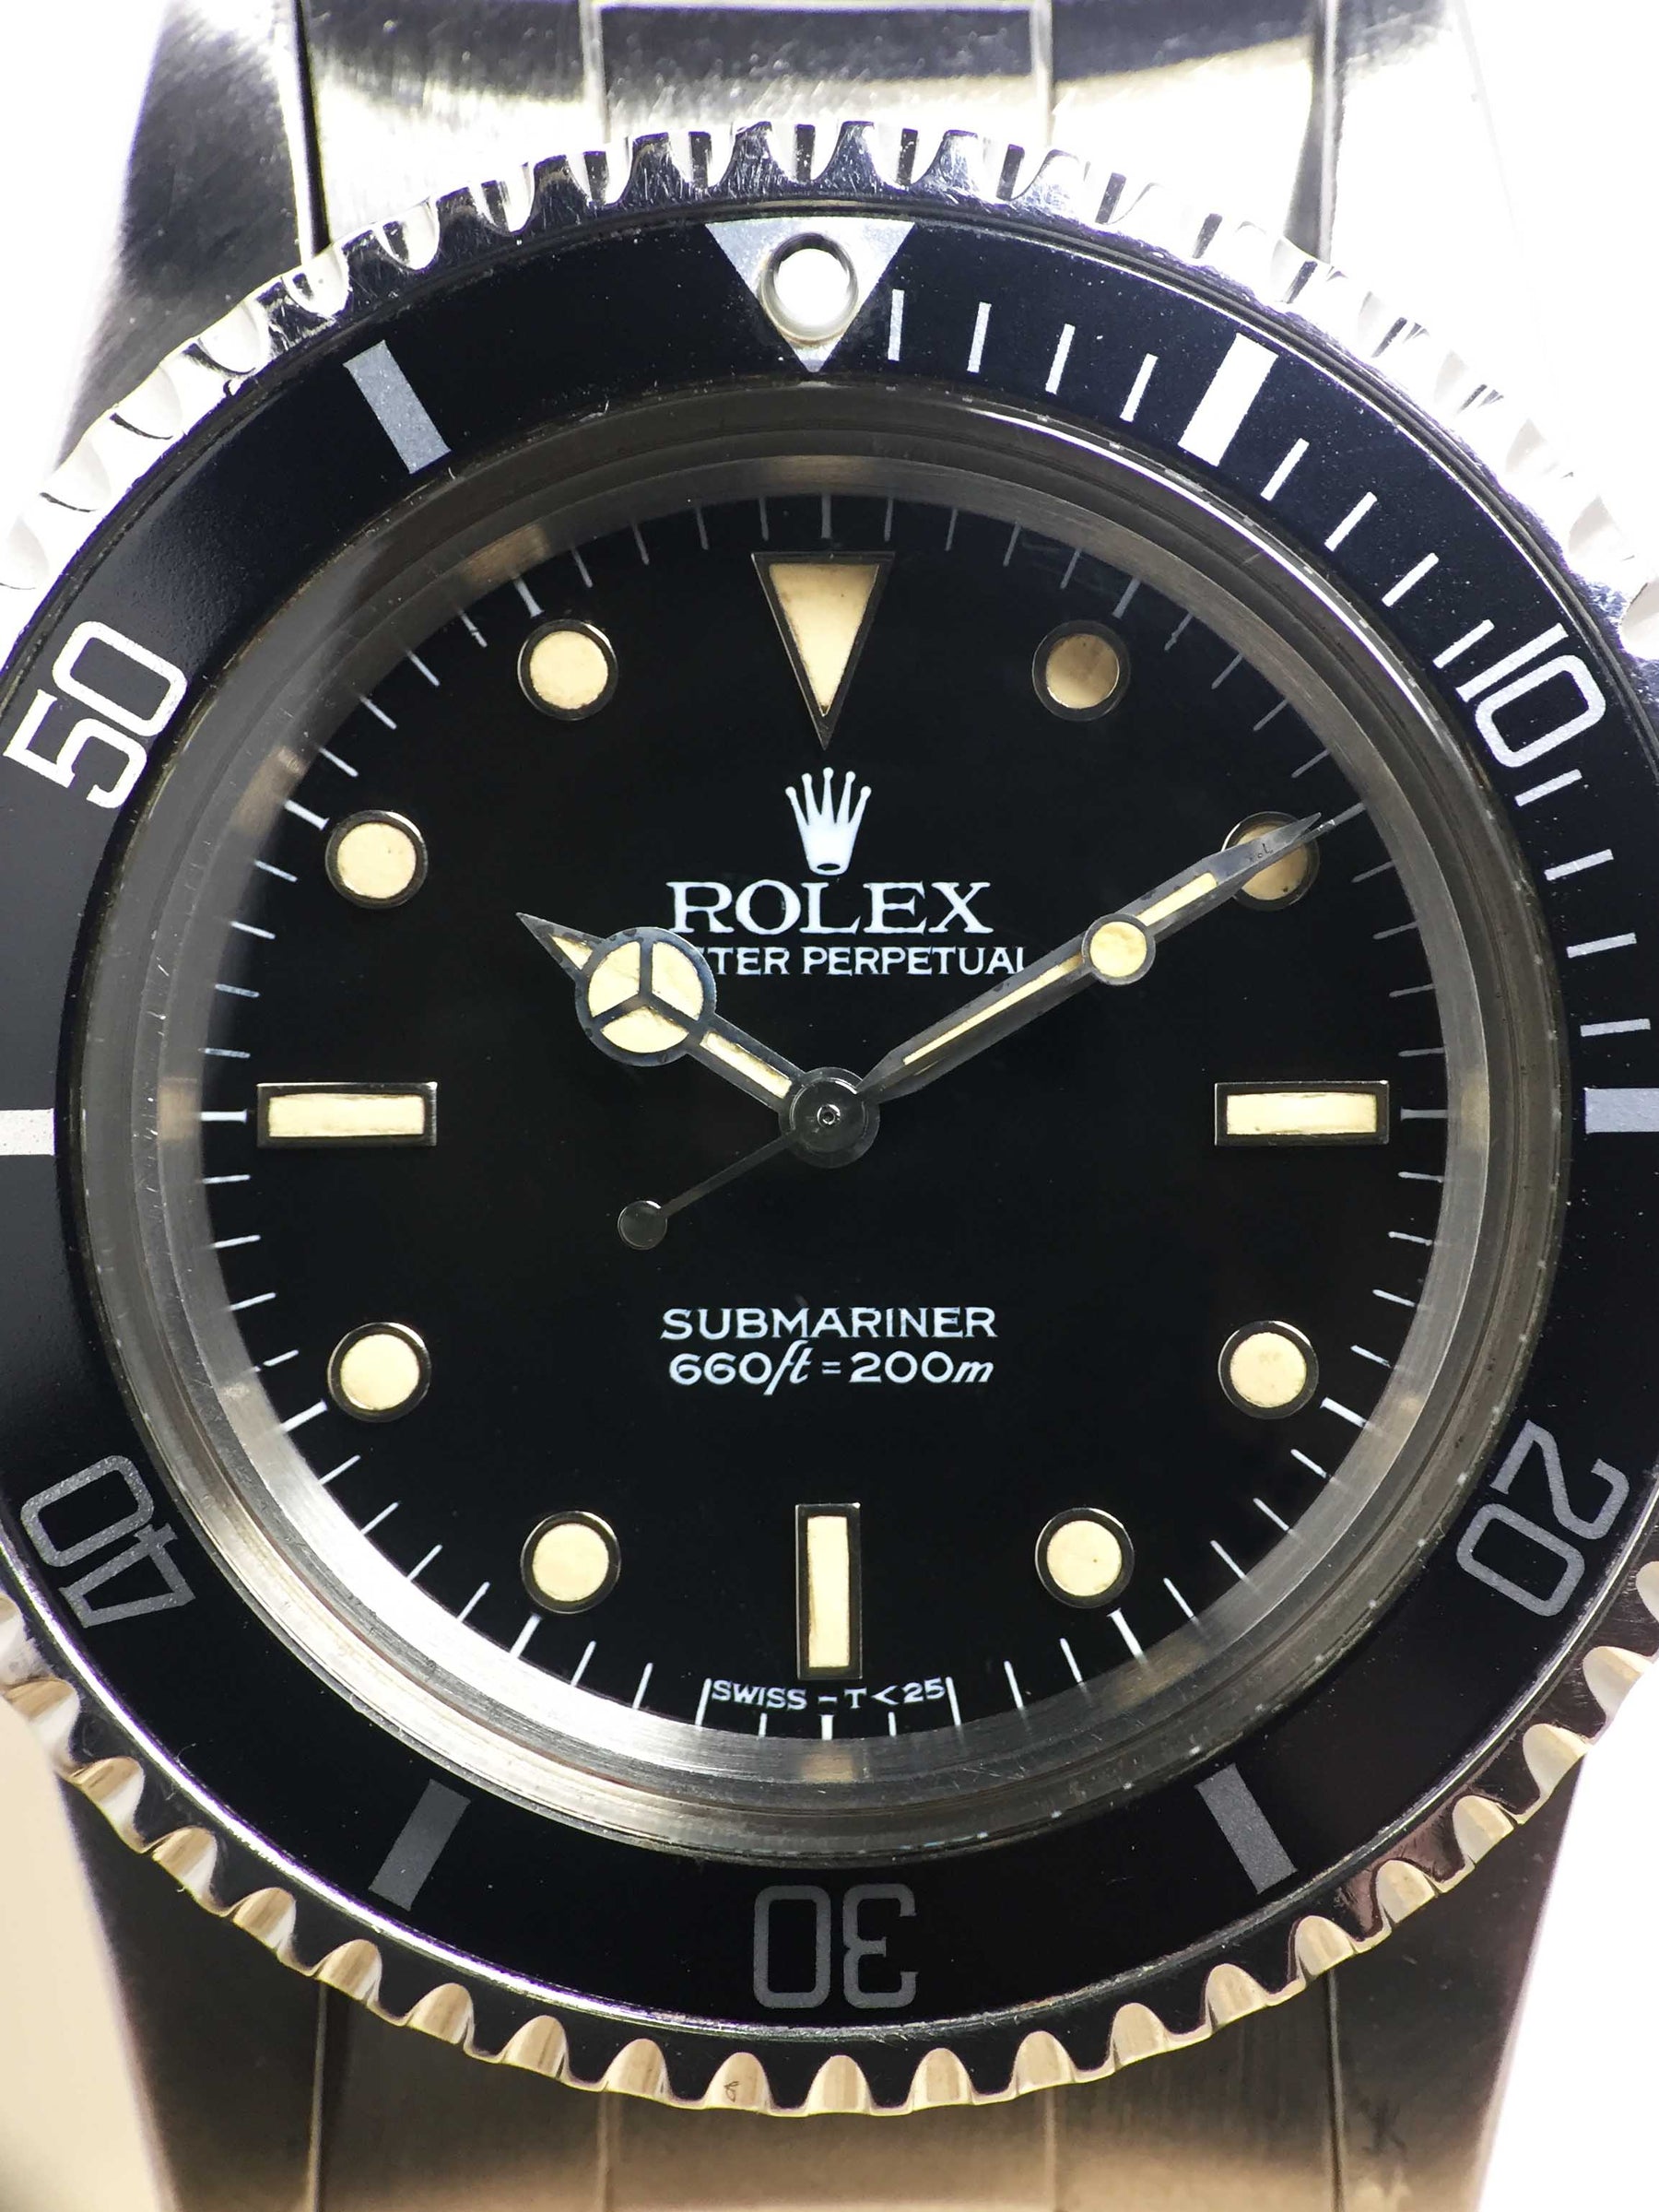 1989 Rolex Submariner L Series Ref. 5513